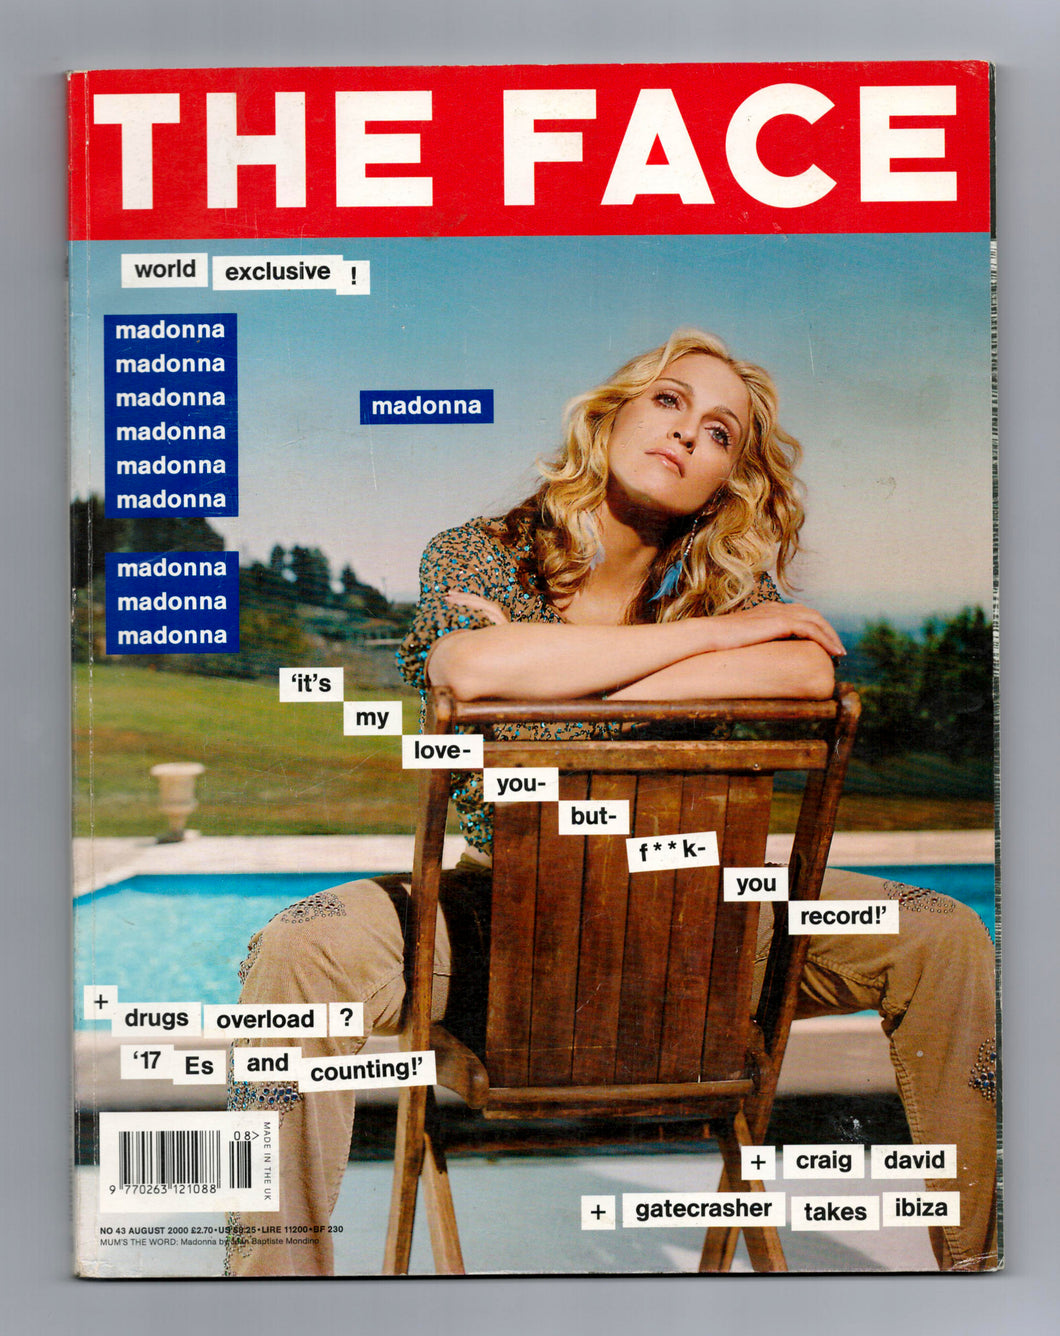 The Face Vol 3 No 43 Aug 2000